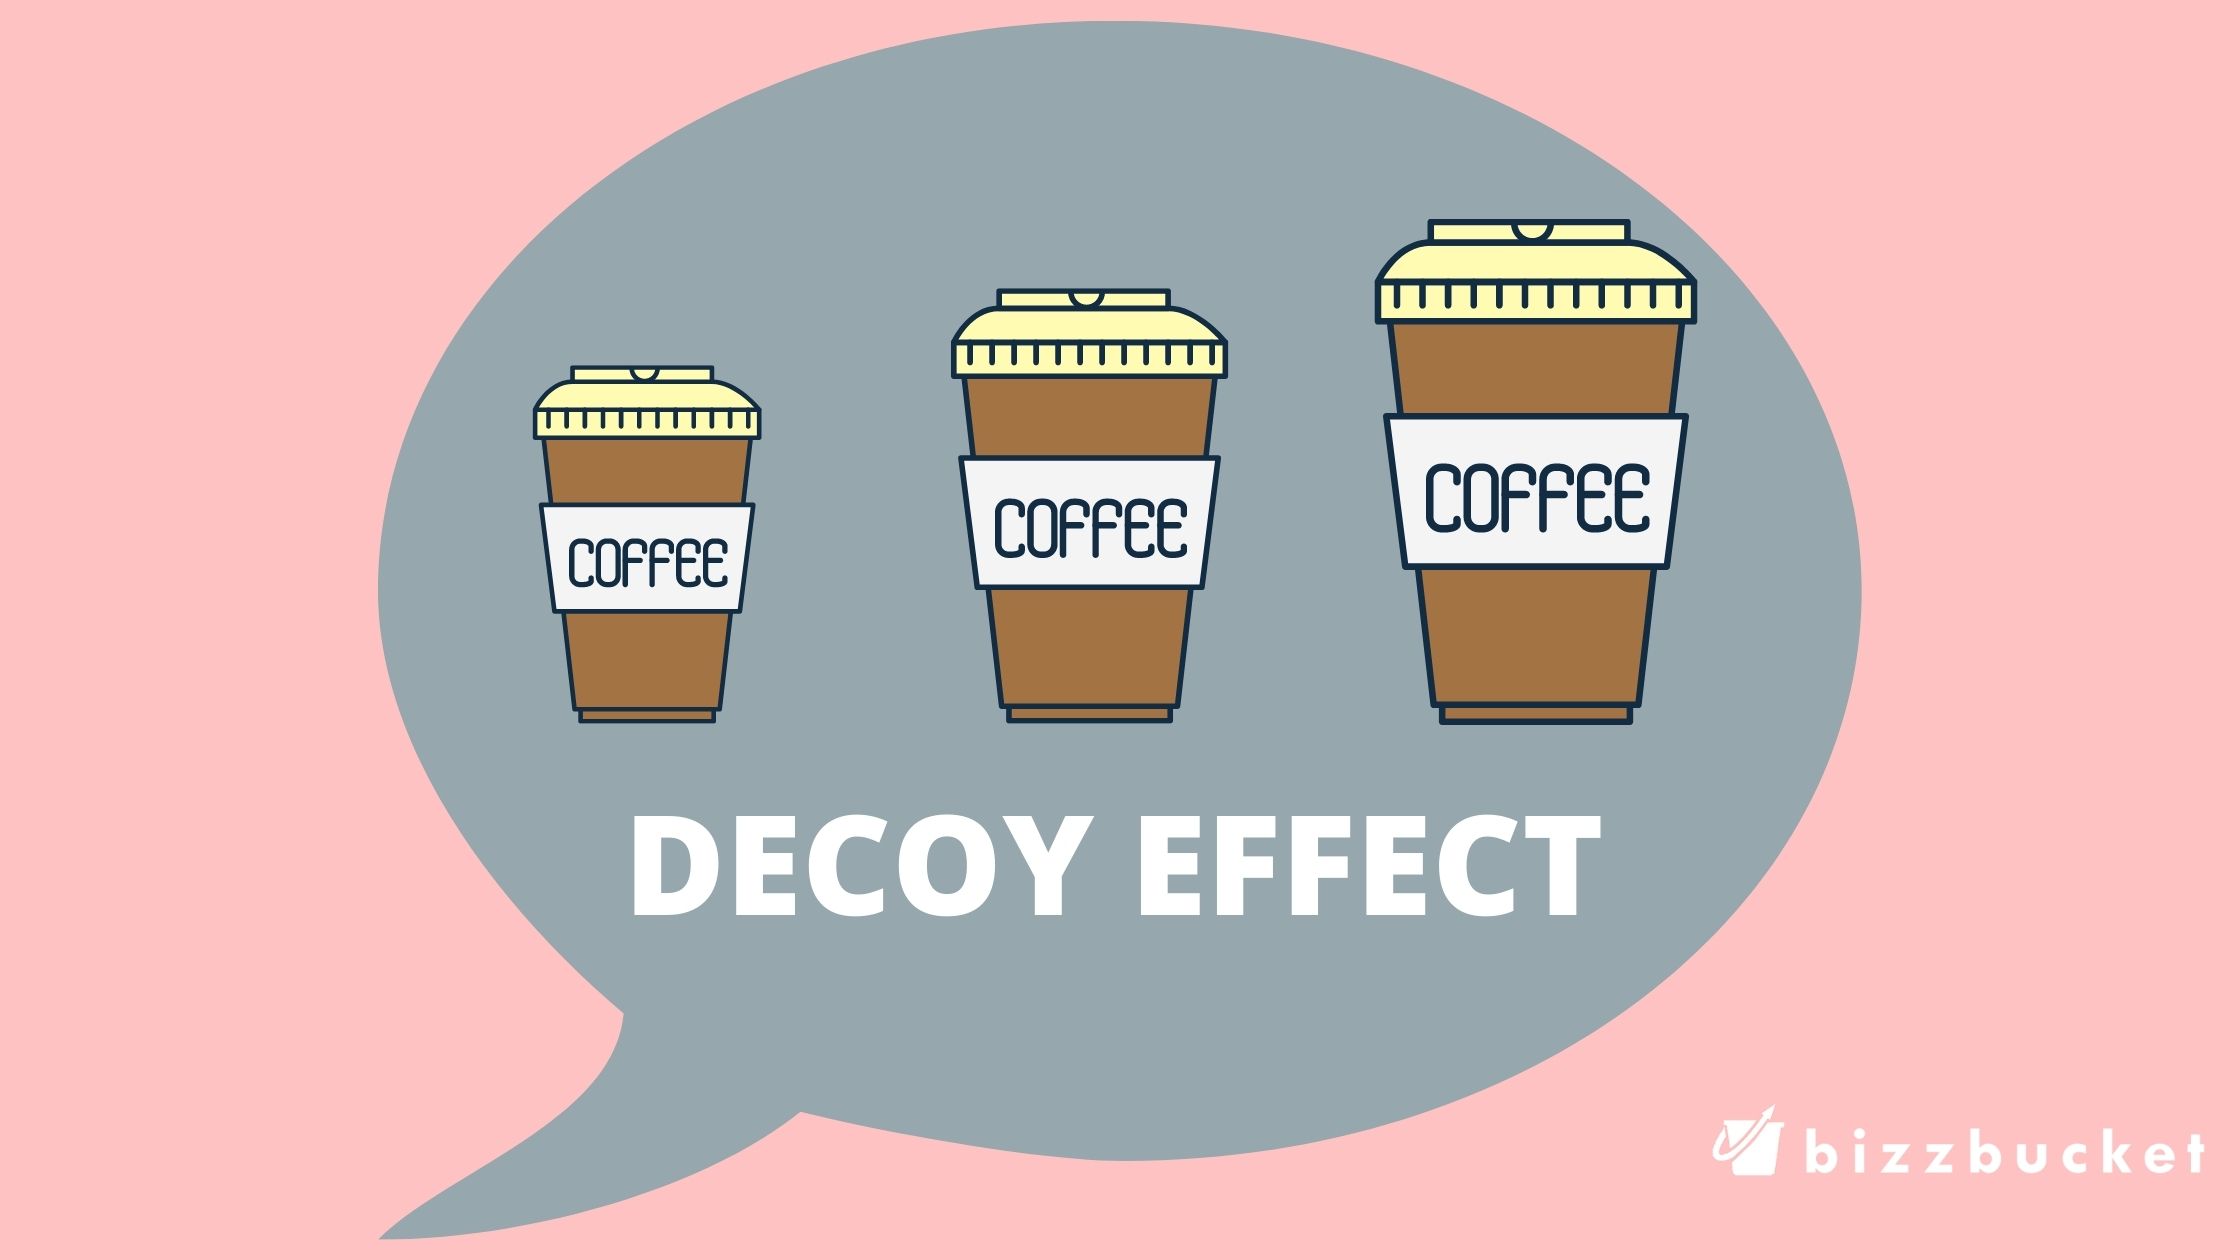 Decoy effect